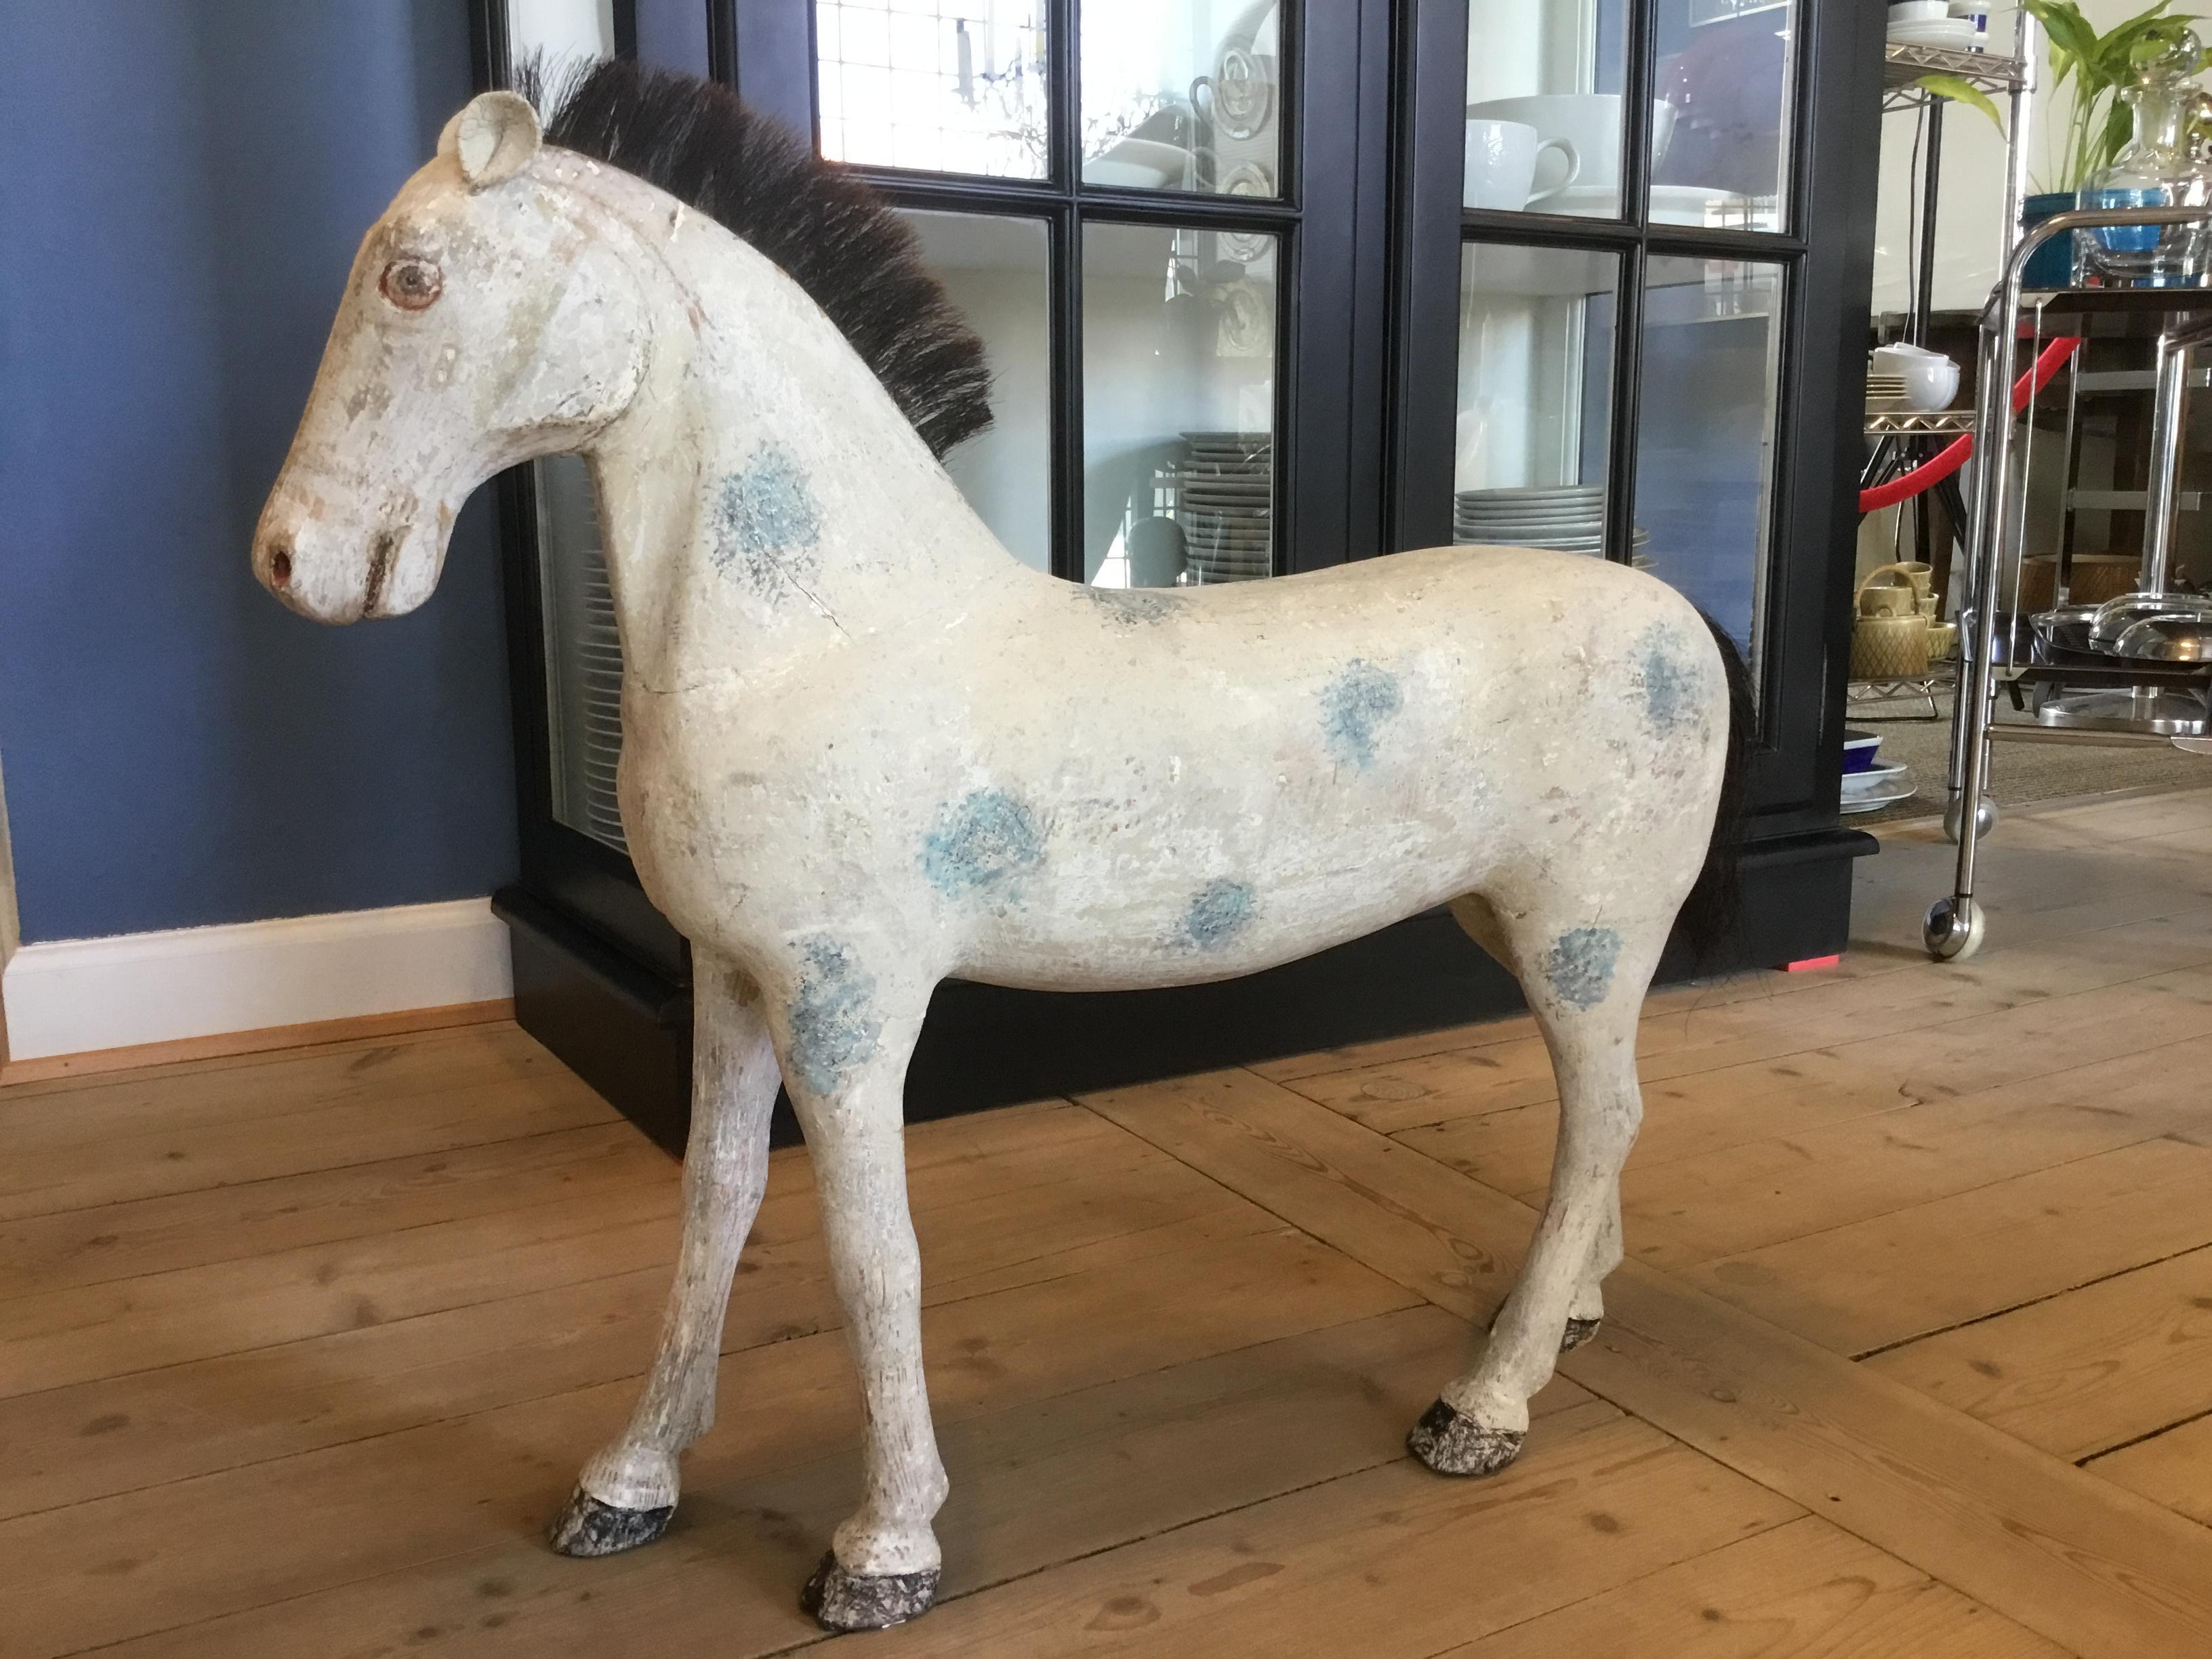 Grand cheval suédois ancien en bois sculpté avec peinture patinée d'origine de couleur blanc cassé avec des points bleus.
Fabriqué vers la fin du 19e siècle.
Les oreilles sont en cuir. La queue et la crinière sont en poils naturels.

Mesures : 
La